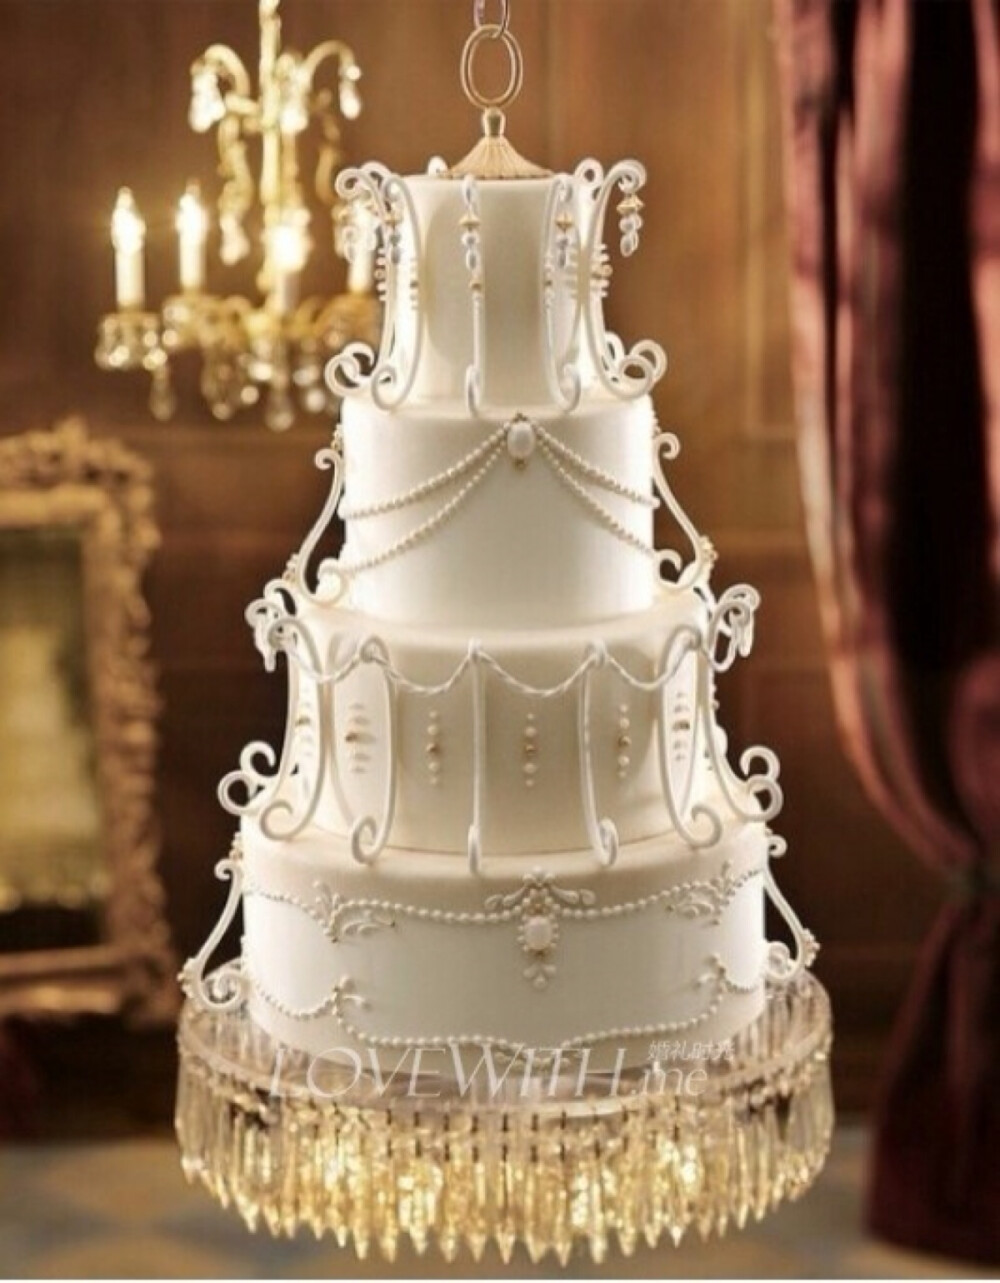 【华丽多层婚礼蛋糕】精雕细琢的蛋糕在灯光的照耀下熠熠生辉,别有一